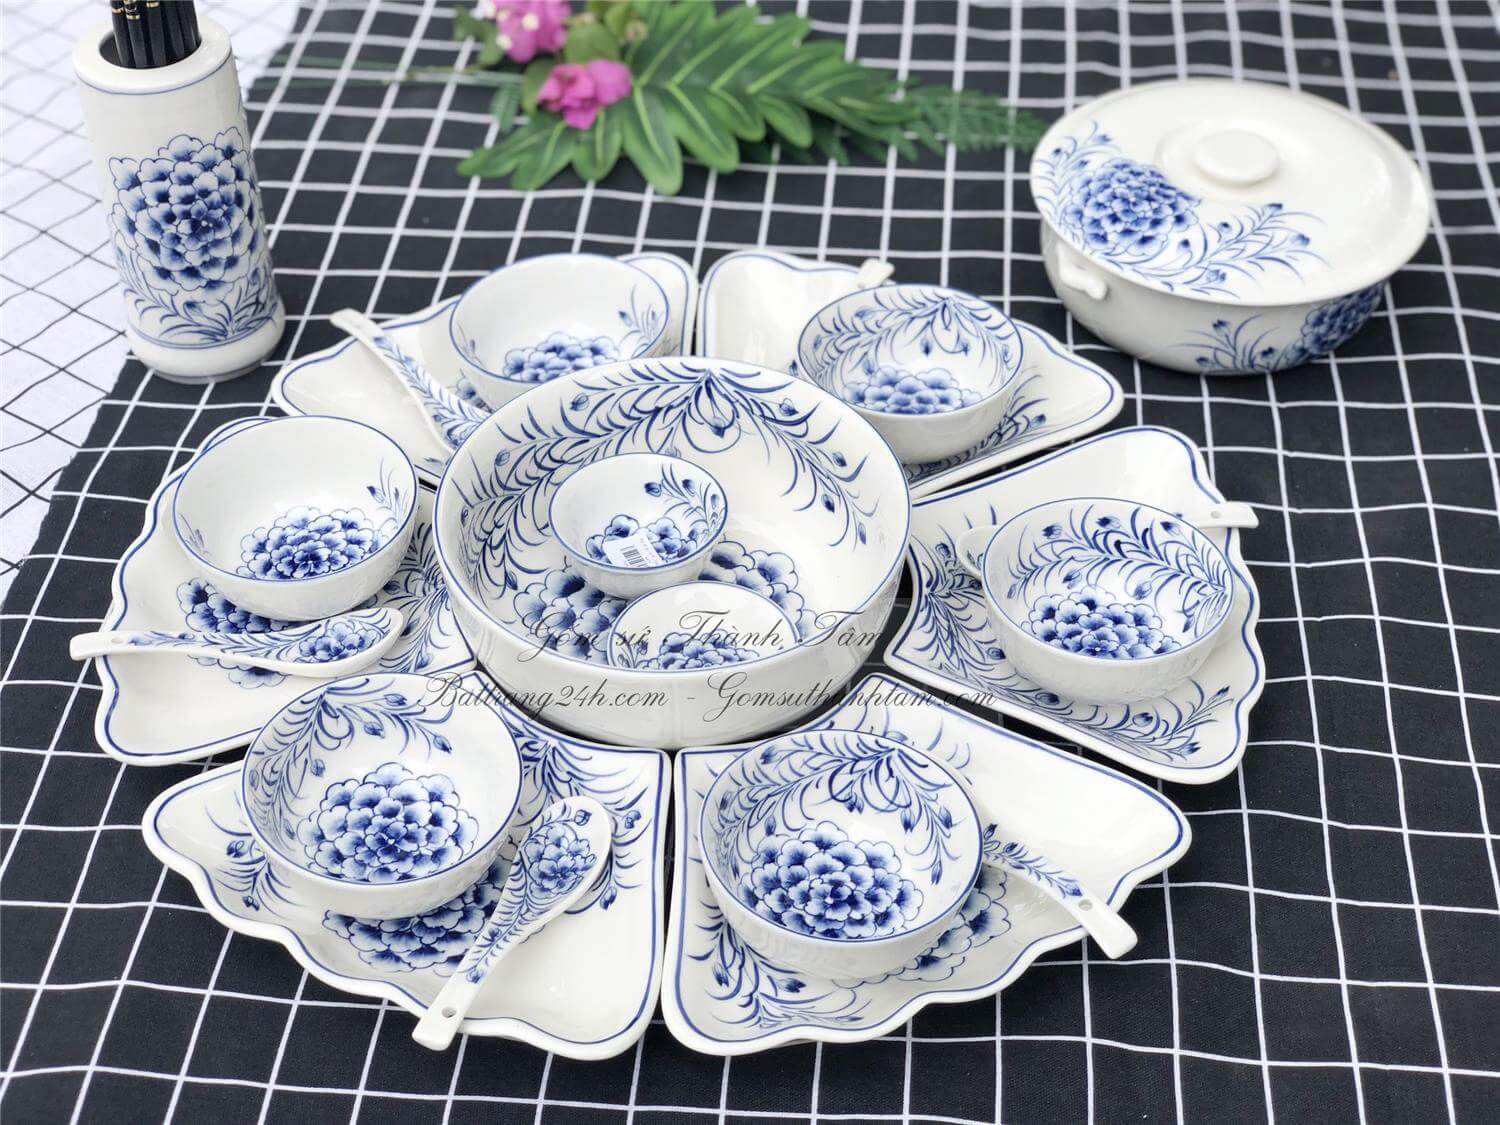 Mua bộ bát đĩa gốm sứ cao cấp để bàn ăn đẹp dùng trong gia đình, bộ bát đĩa gốm sứ Bát Tràng cao cấp chất lượng tốt nhất